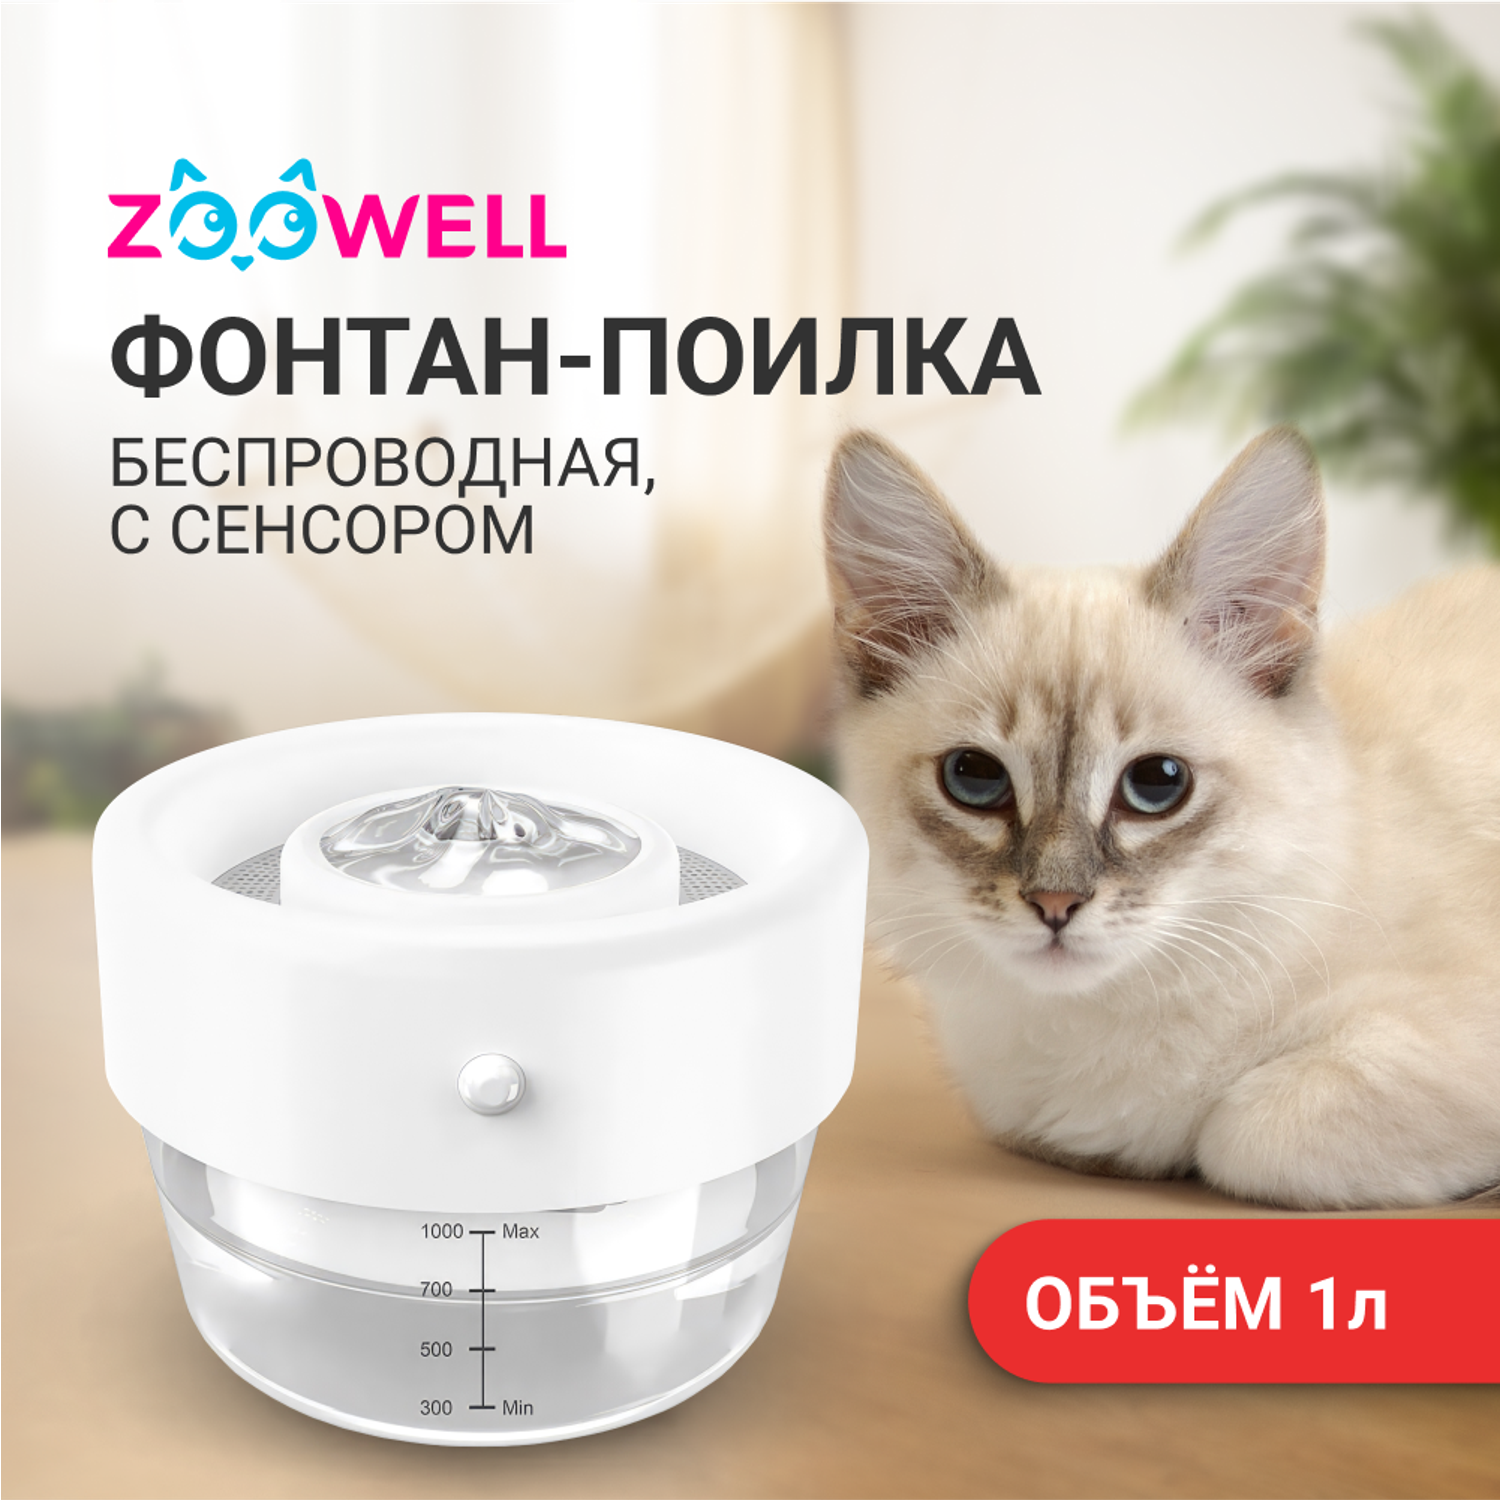 Поилка-фонтан для кошек ZDK ZooWell Smart автоматическая беспроводная с сенсором и дозатором - фото 2